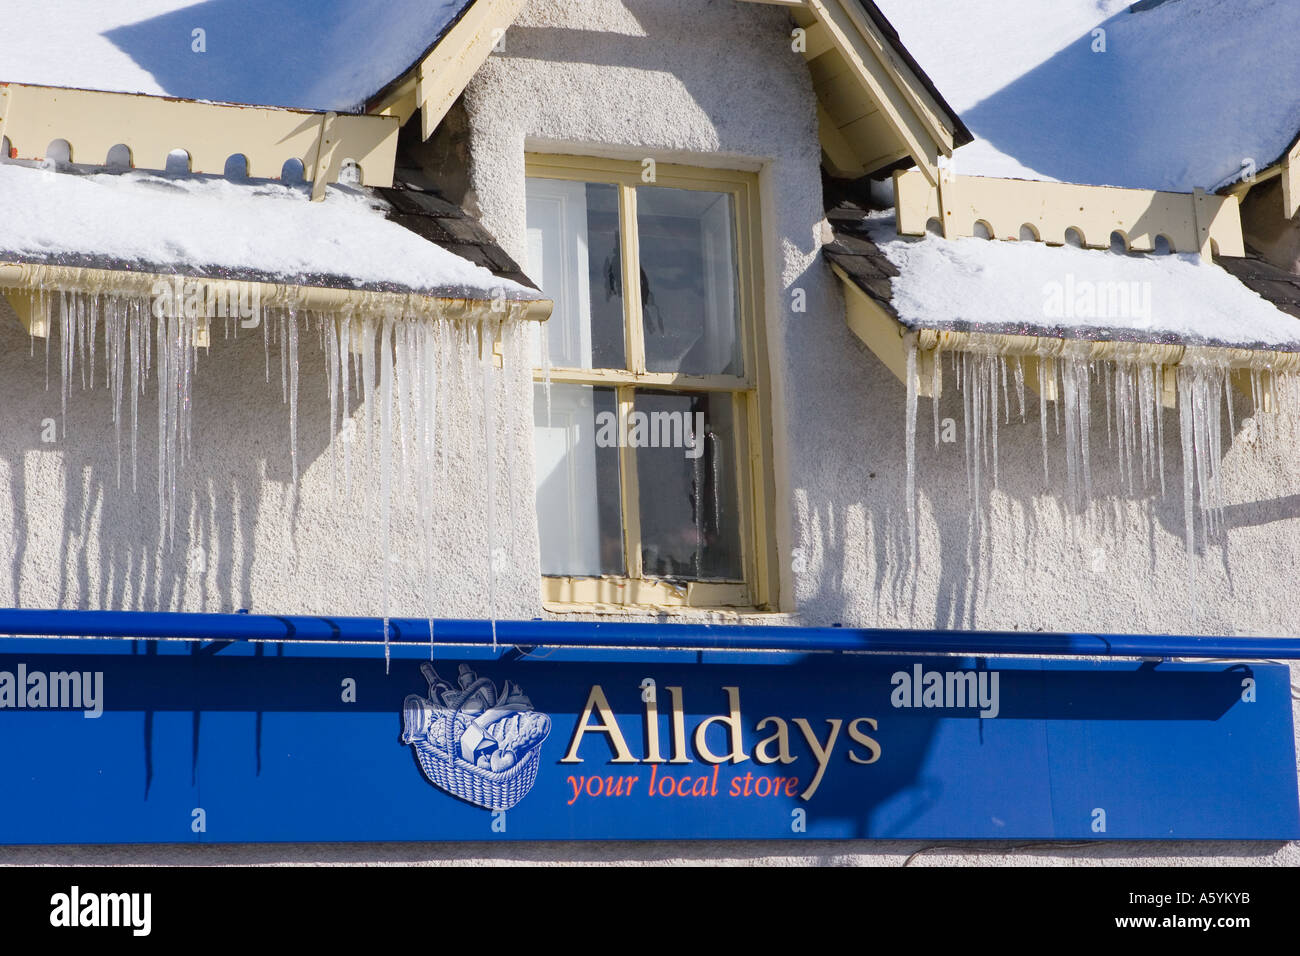 Geneigtes schneebedecktes Dach mit harten spitzen Eiszapfen auf Alldays Shop in Braemar Scotland UK. Februar Sonnenschein mit Eiszapfen hängen von den Dächern Stockfoto